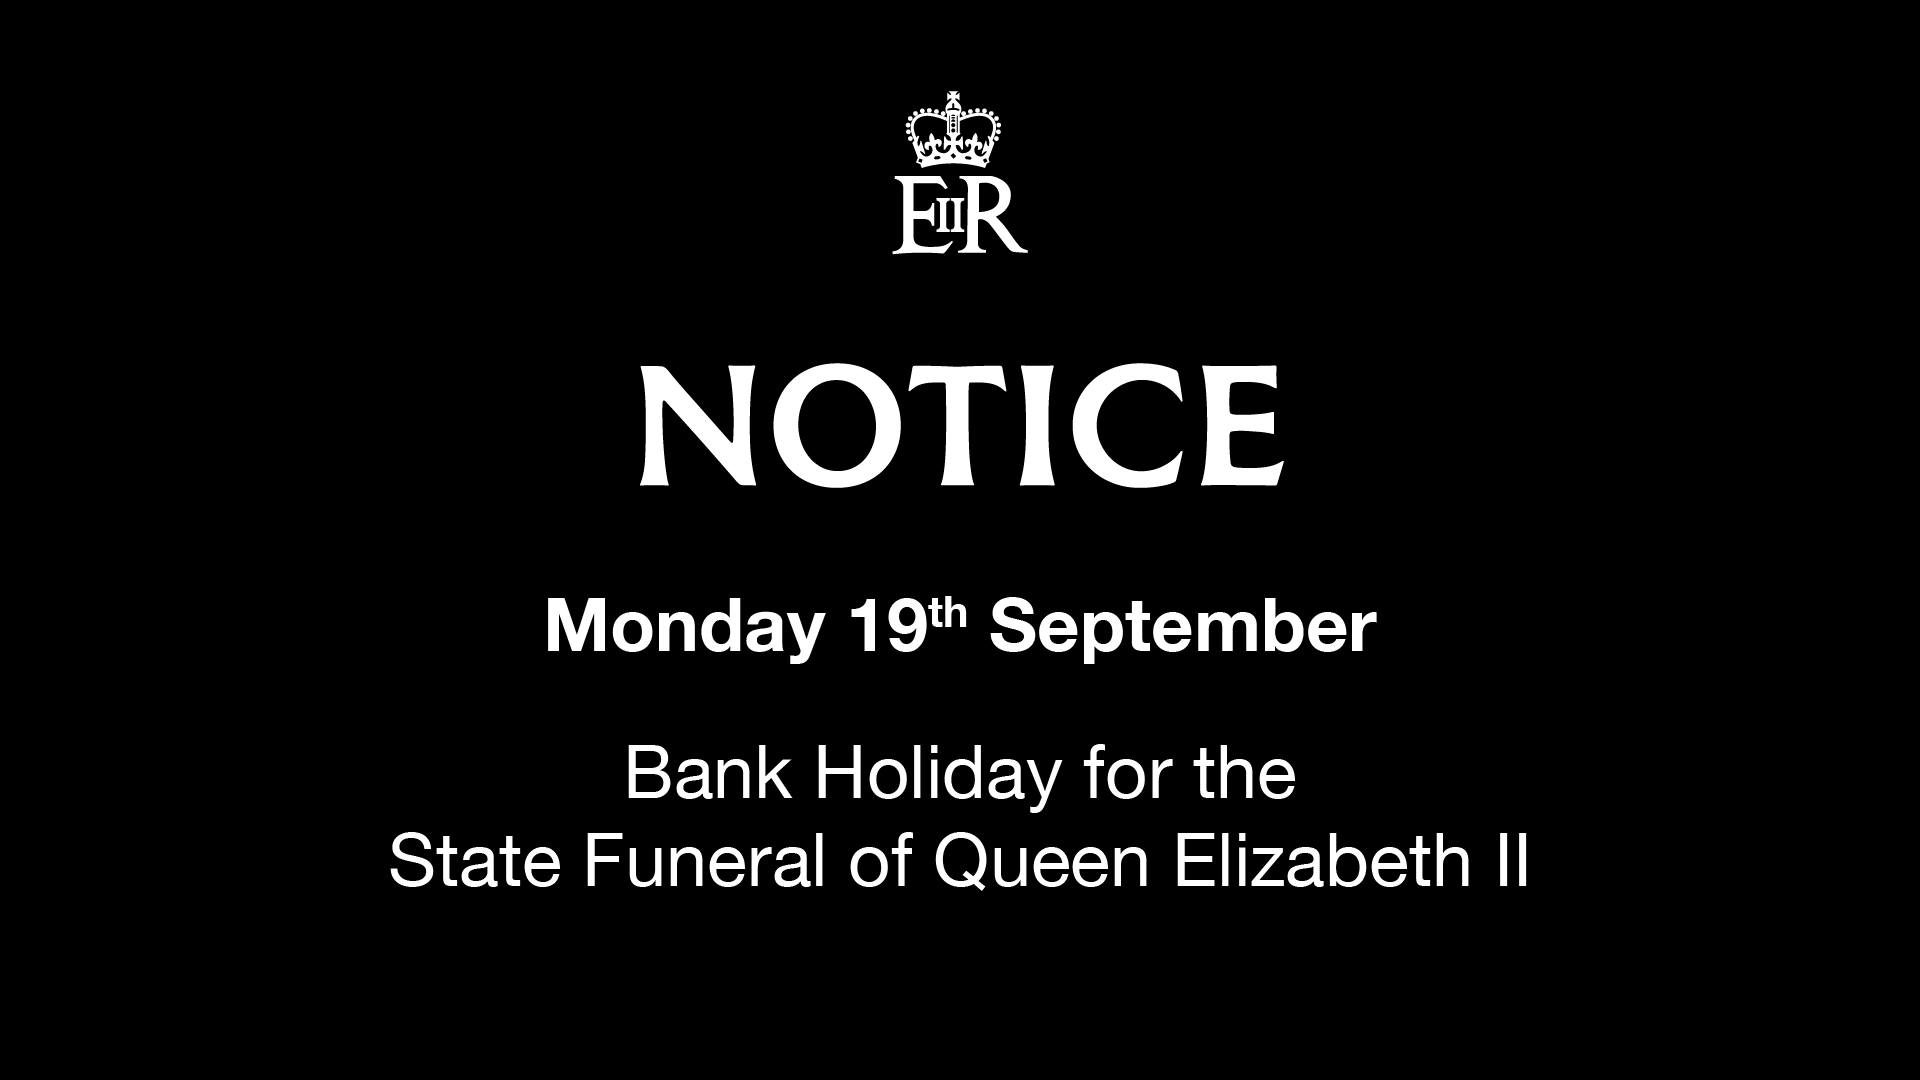 Queen Elizabeth ll's funeral